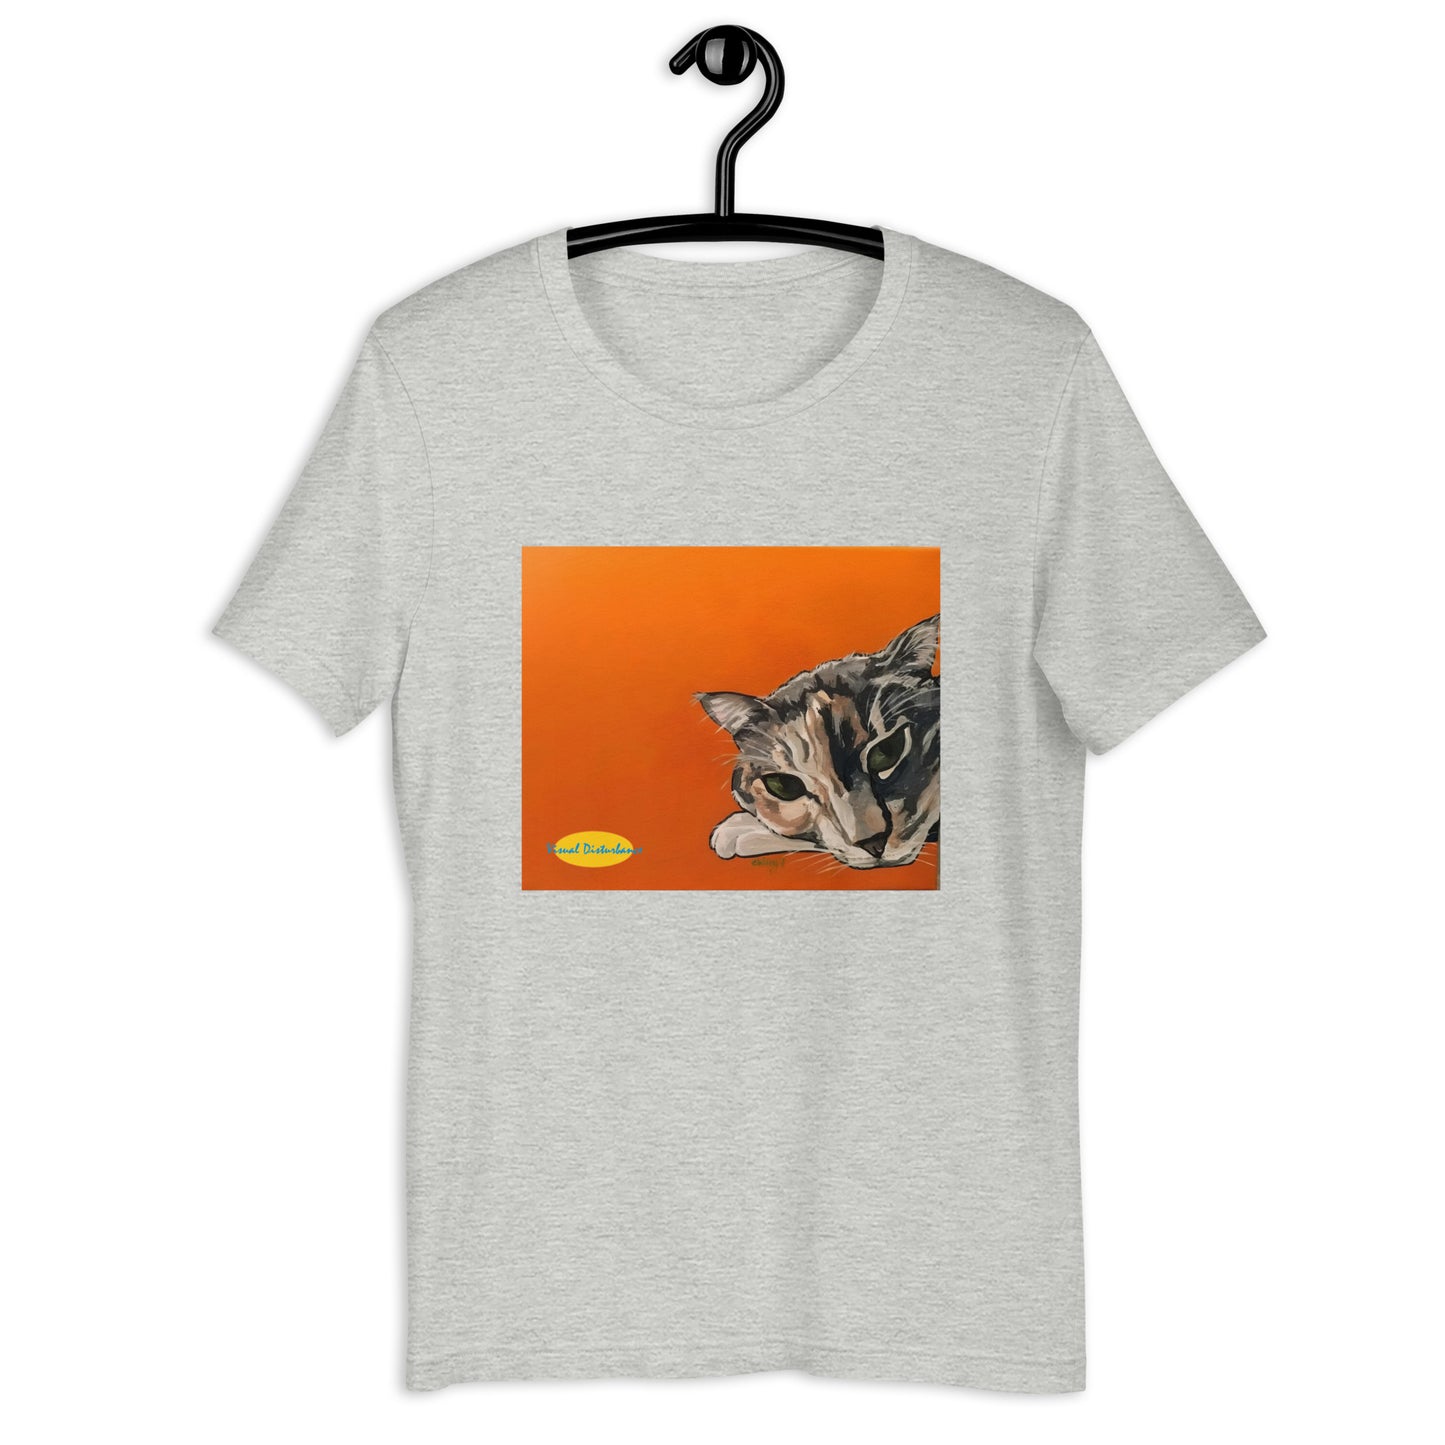 Calico Cat on Orange Unisex t-shirt